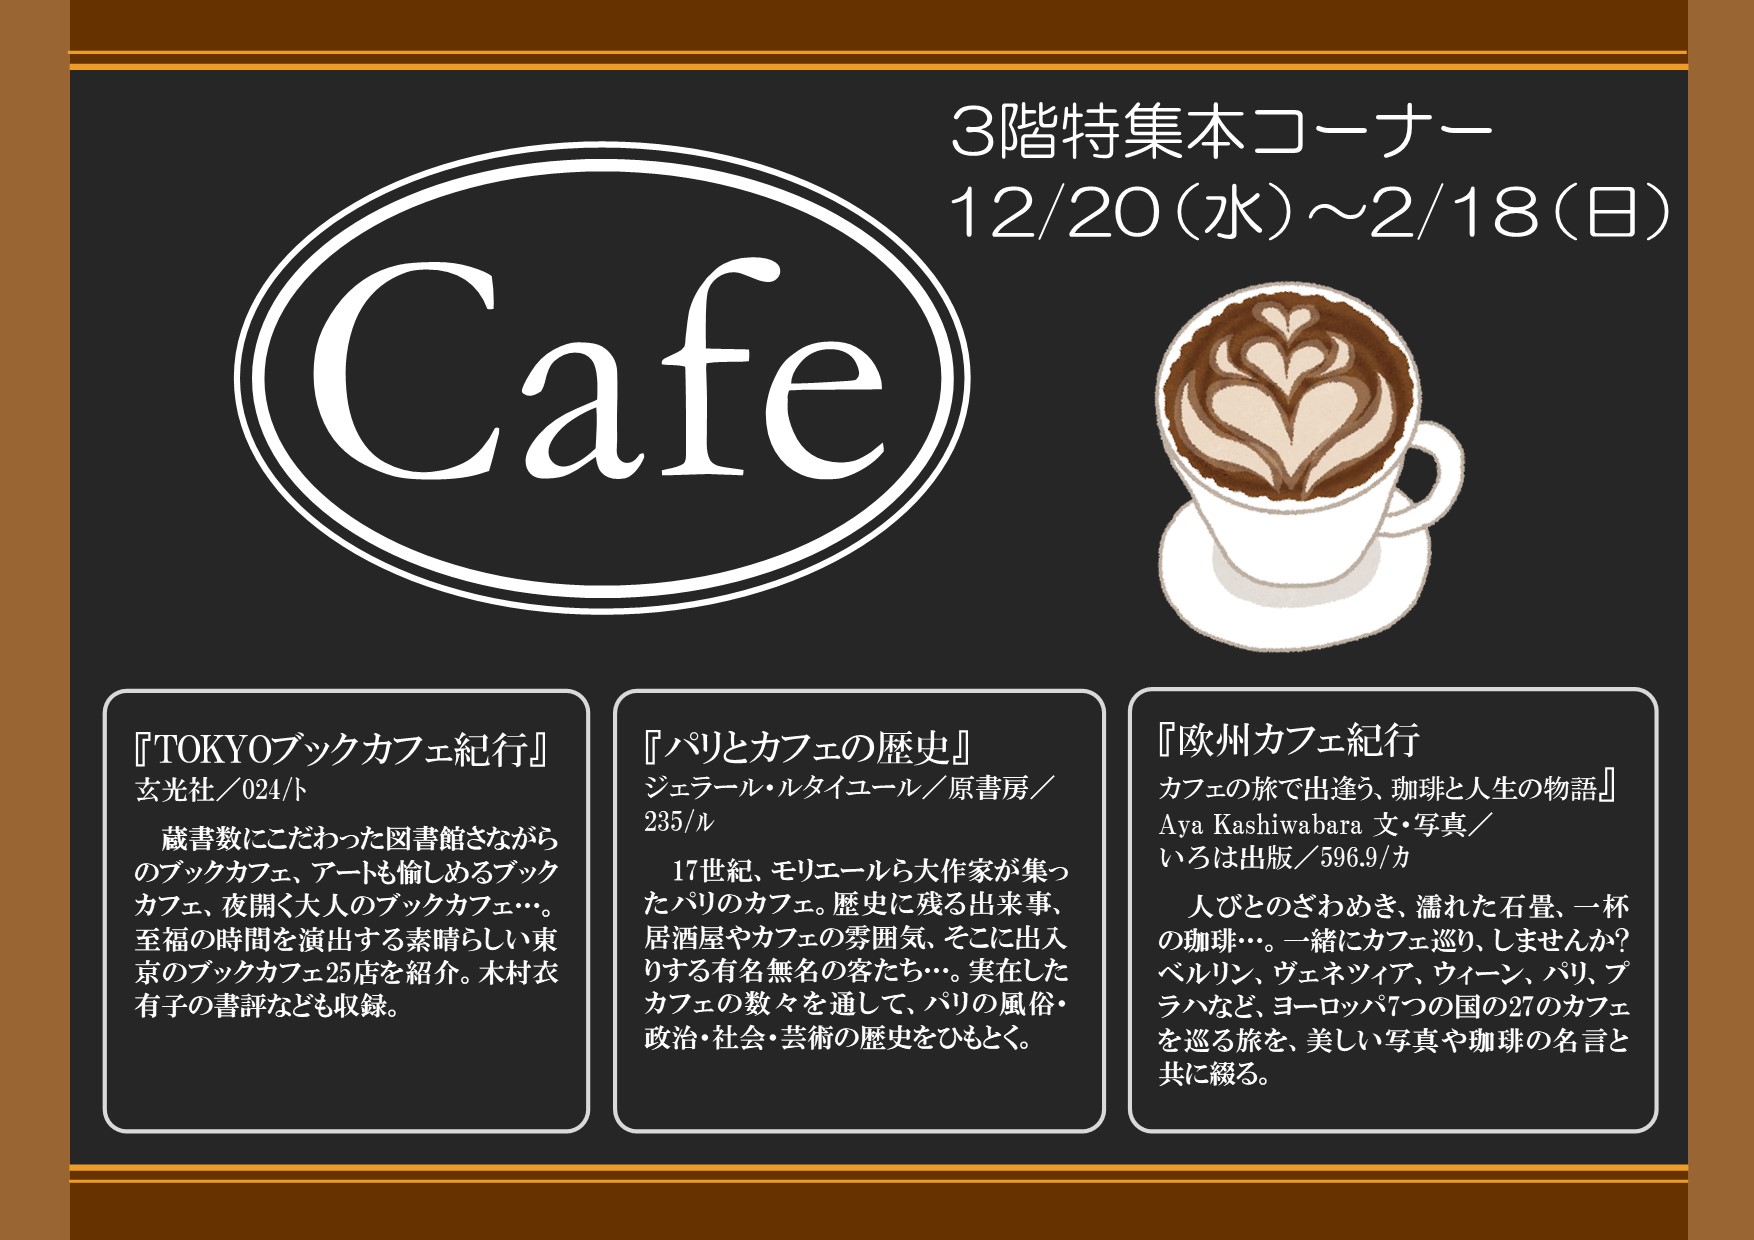 特集展示「Cafe」